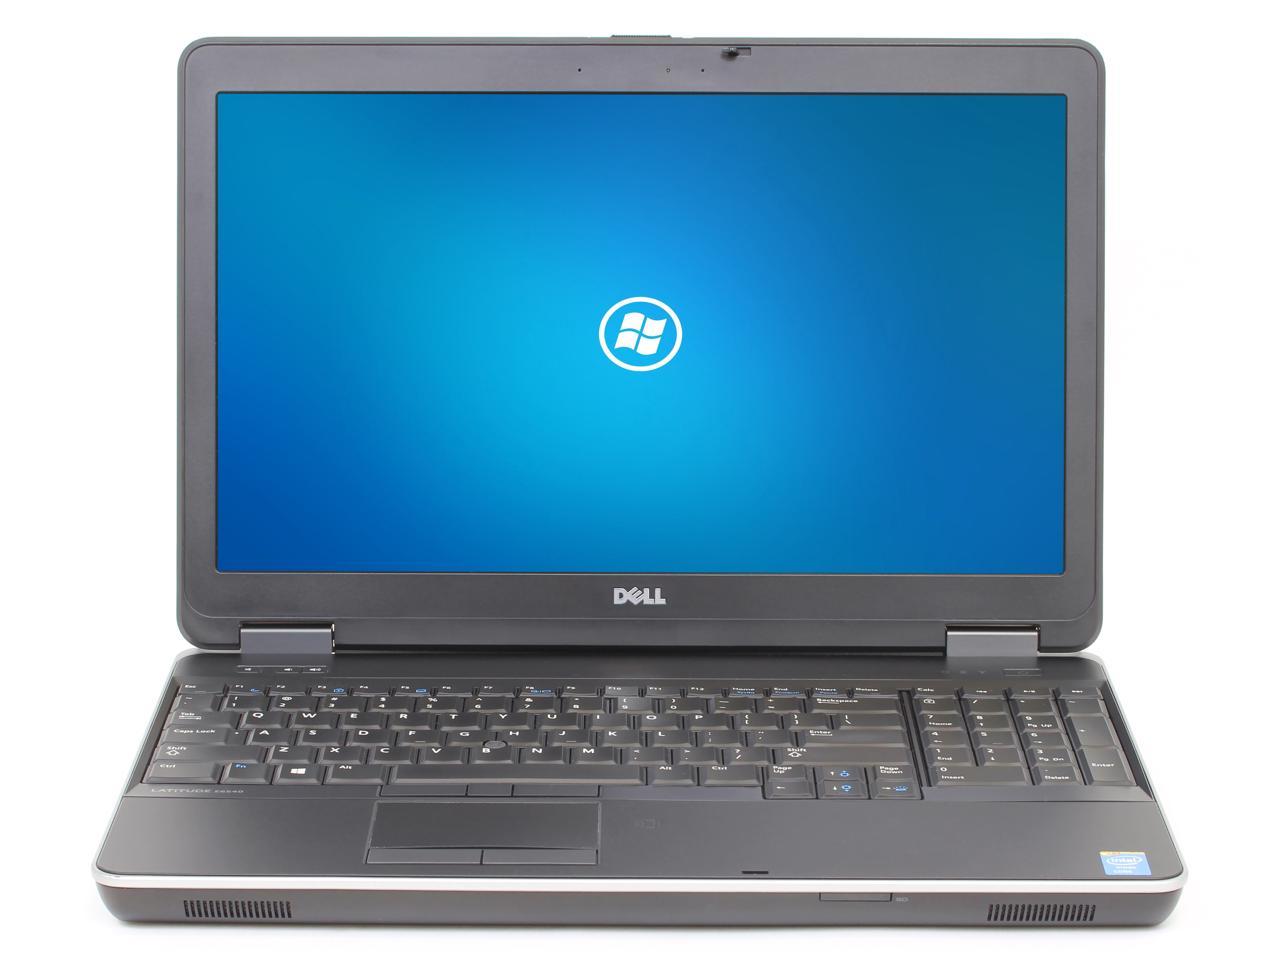 Dell Latitude E6540 15.6" Laptop, Intel Core i7 4600M 2.9Ghz, 8GB DDR3, 960GB SSD Hard Drive, Webcam, HDMI, DVDRW, Windows 10 Pro x64